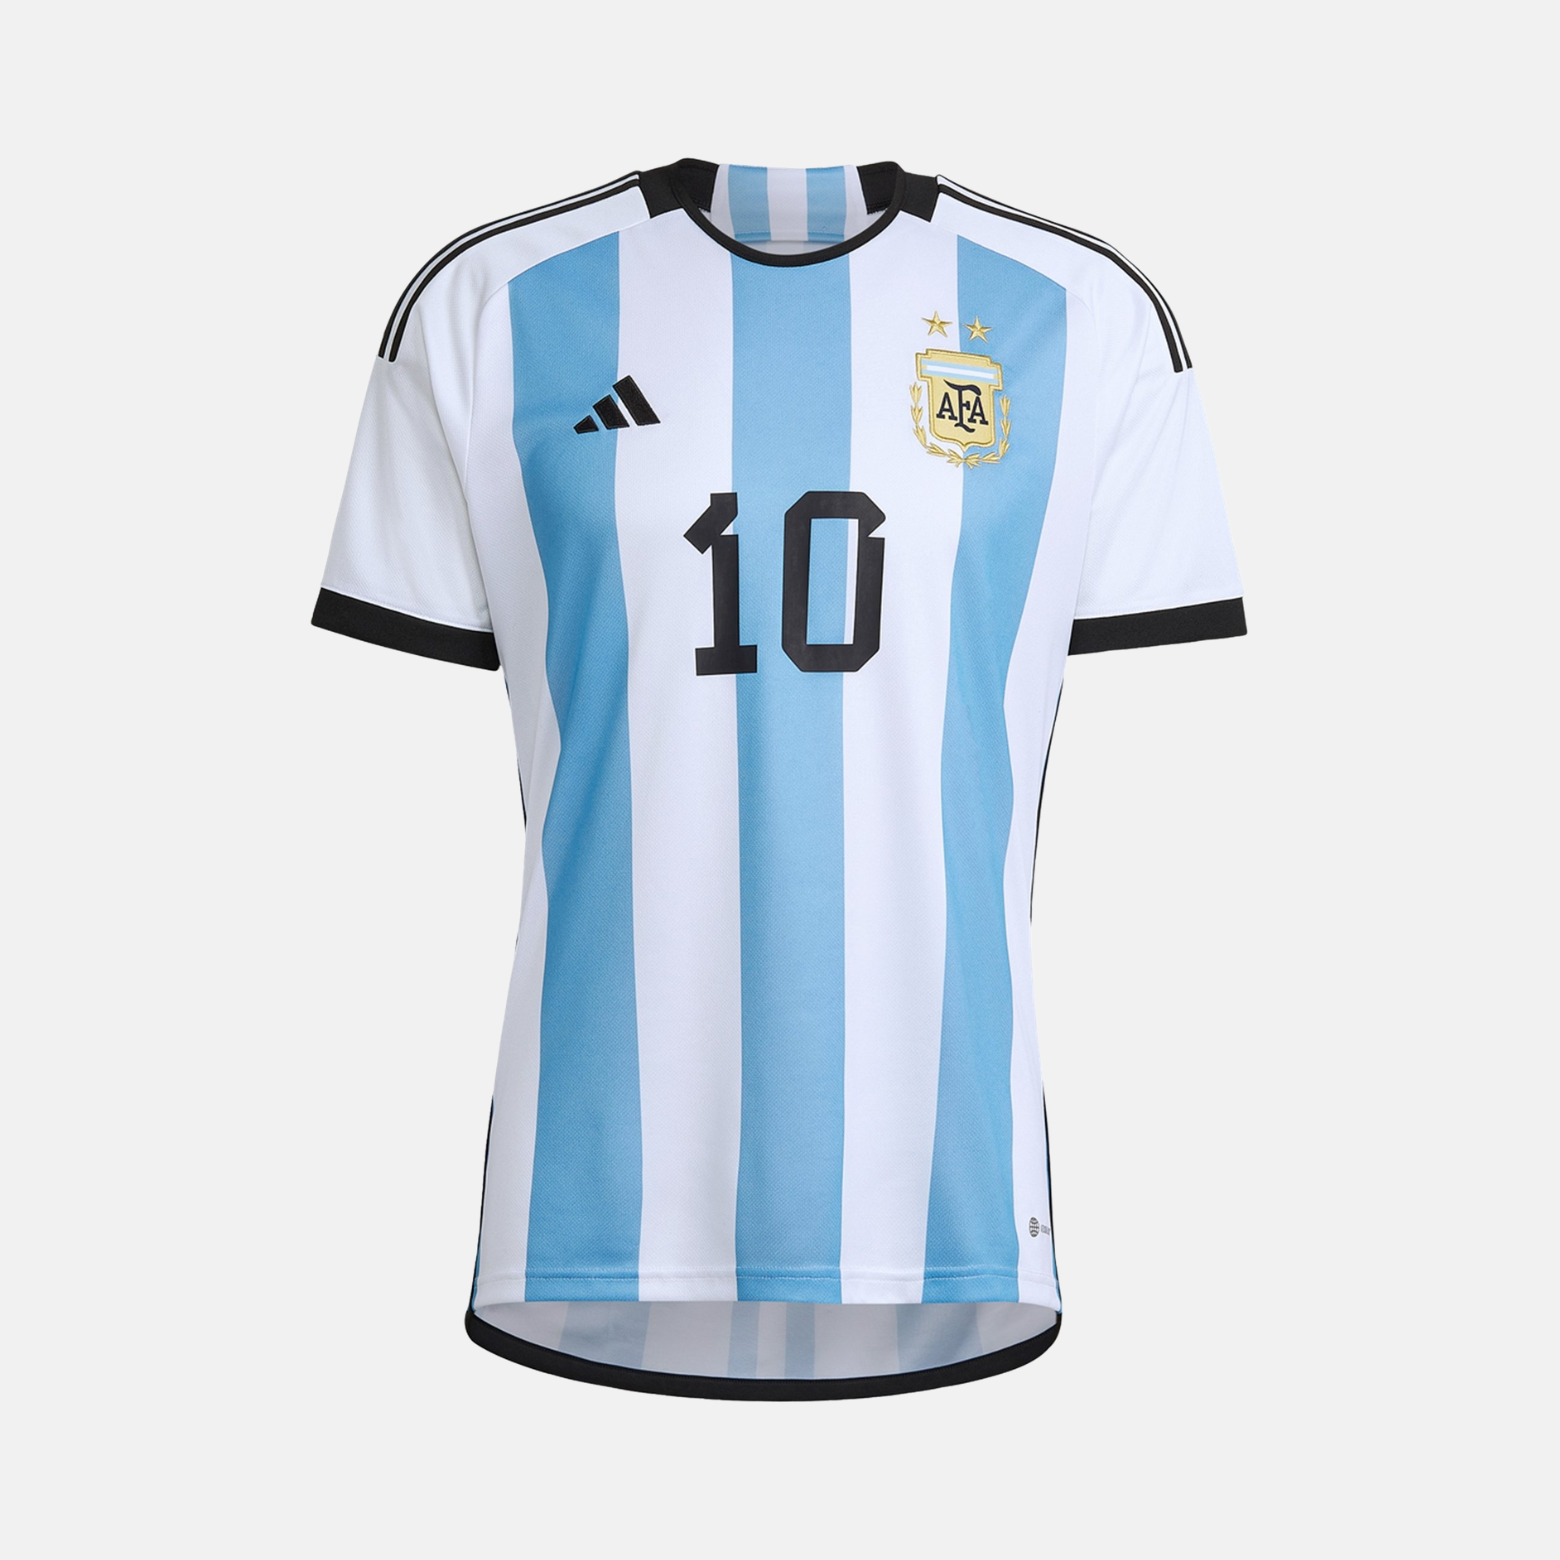 Messi Argentine Jersey